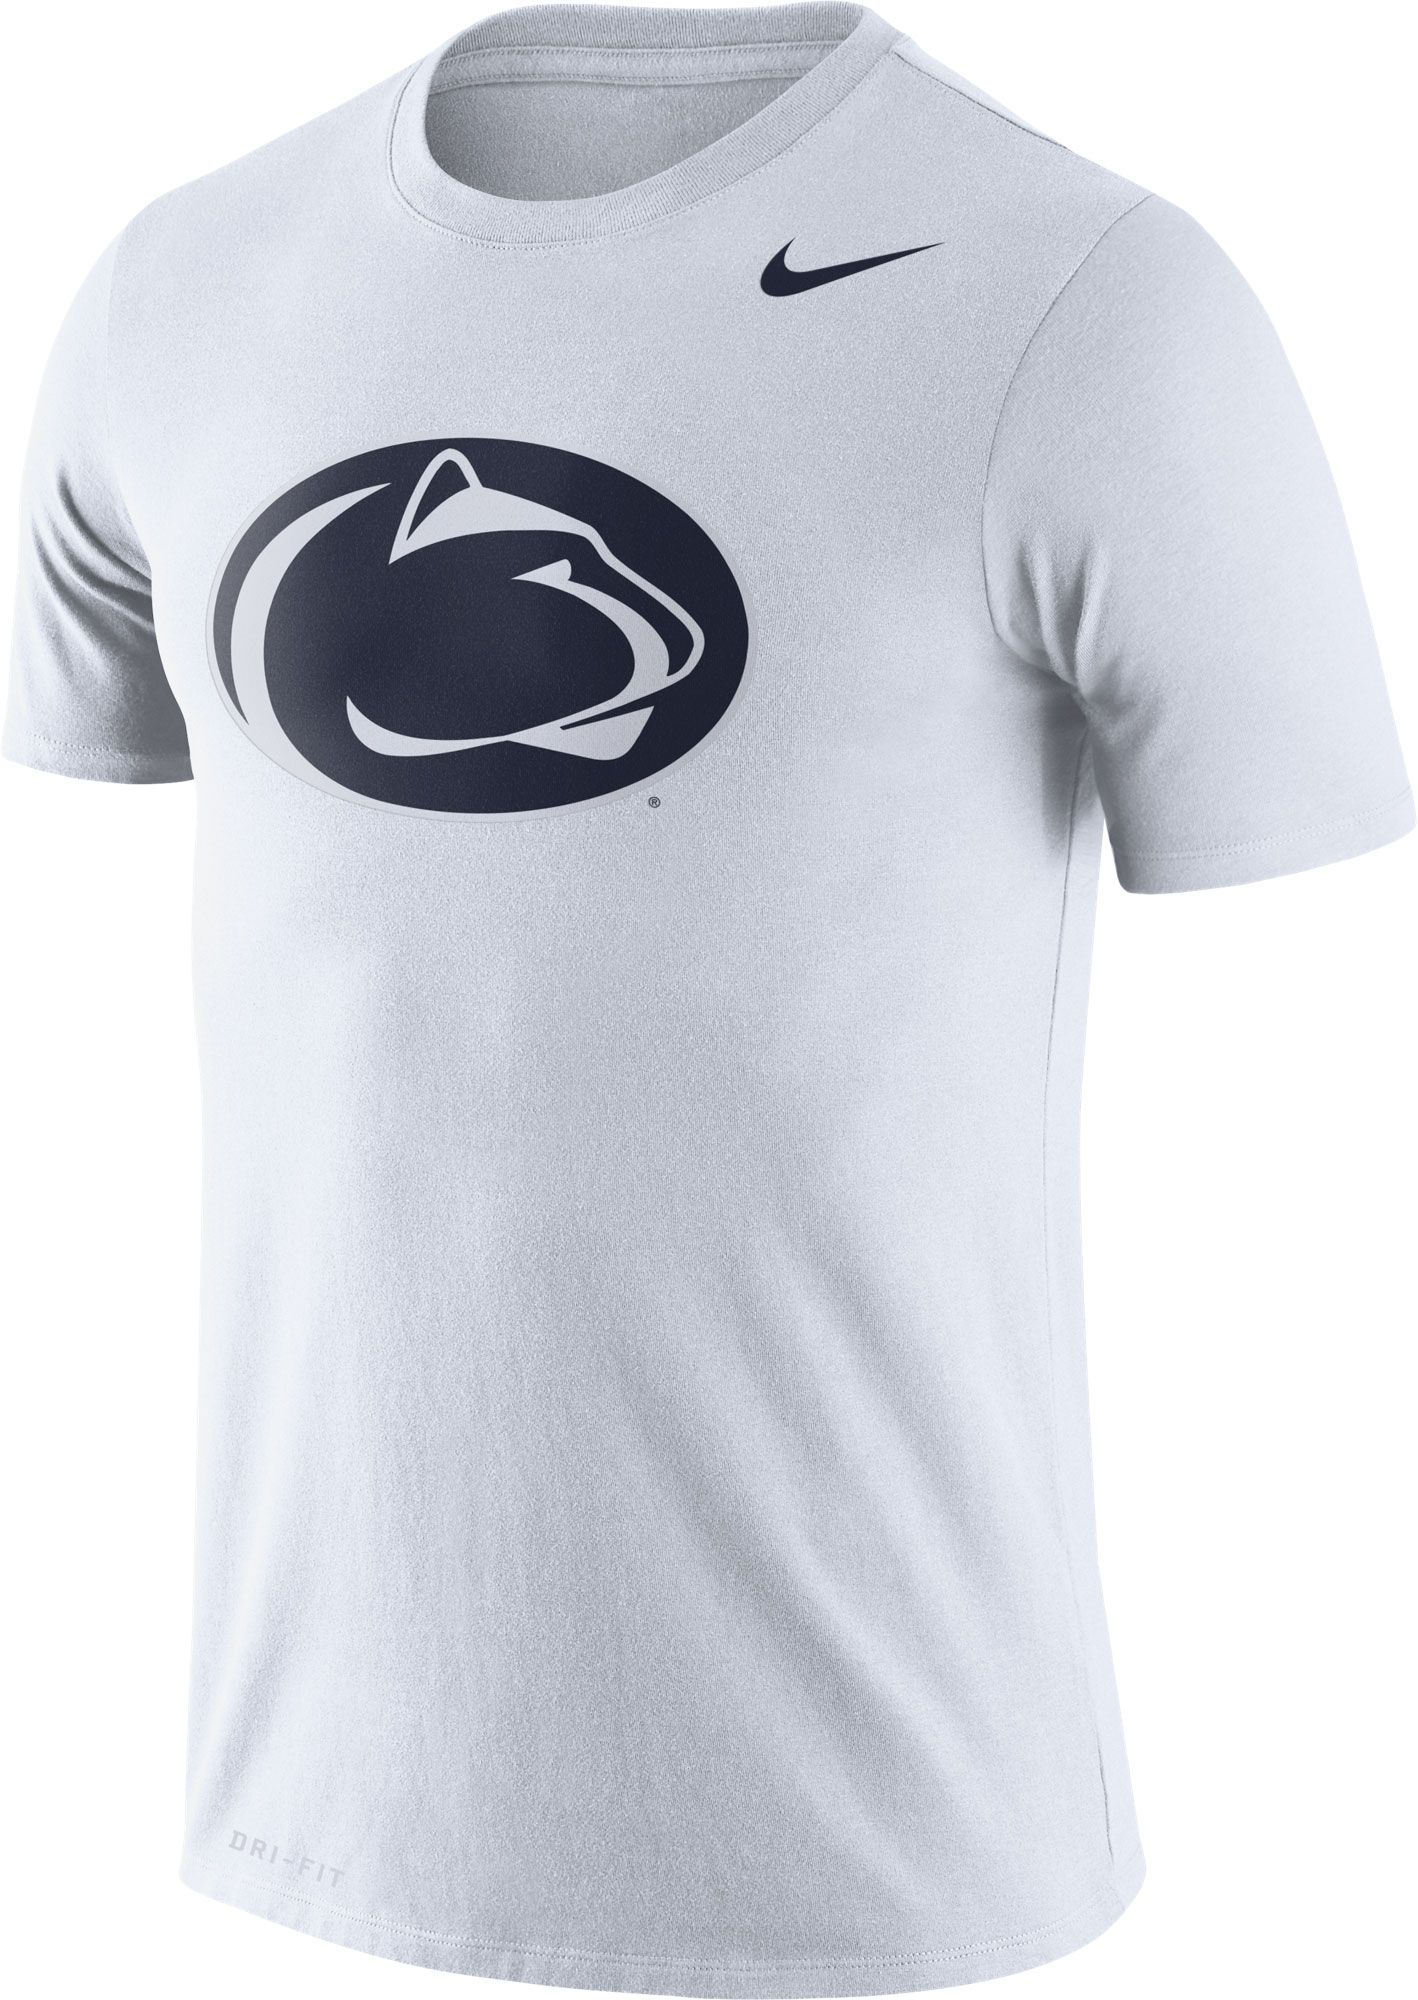 Nike Men's Penn State Nittany Lions 